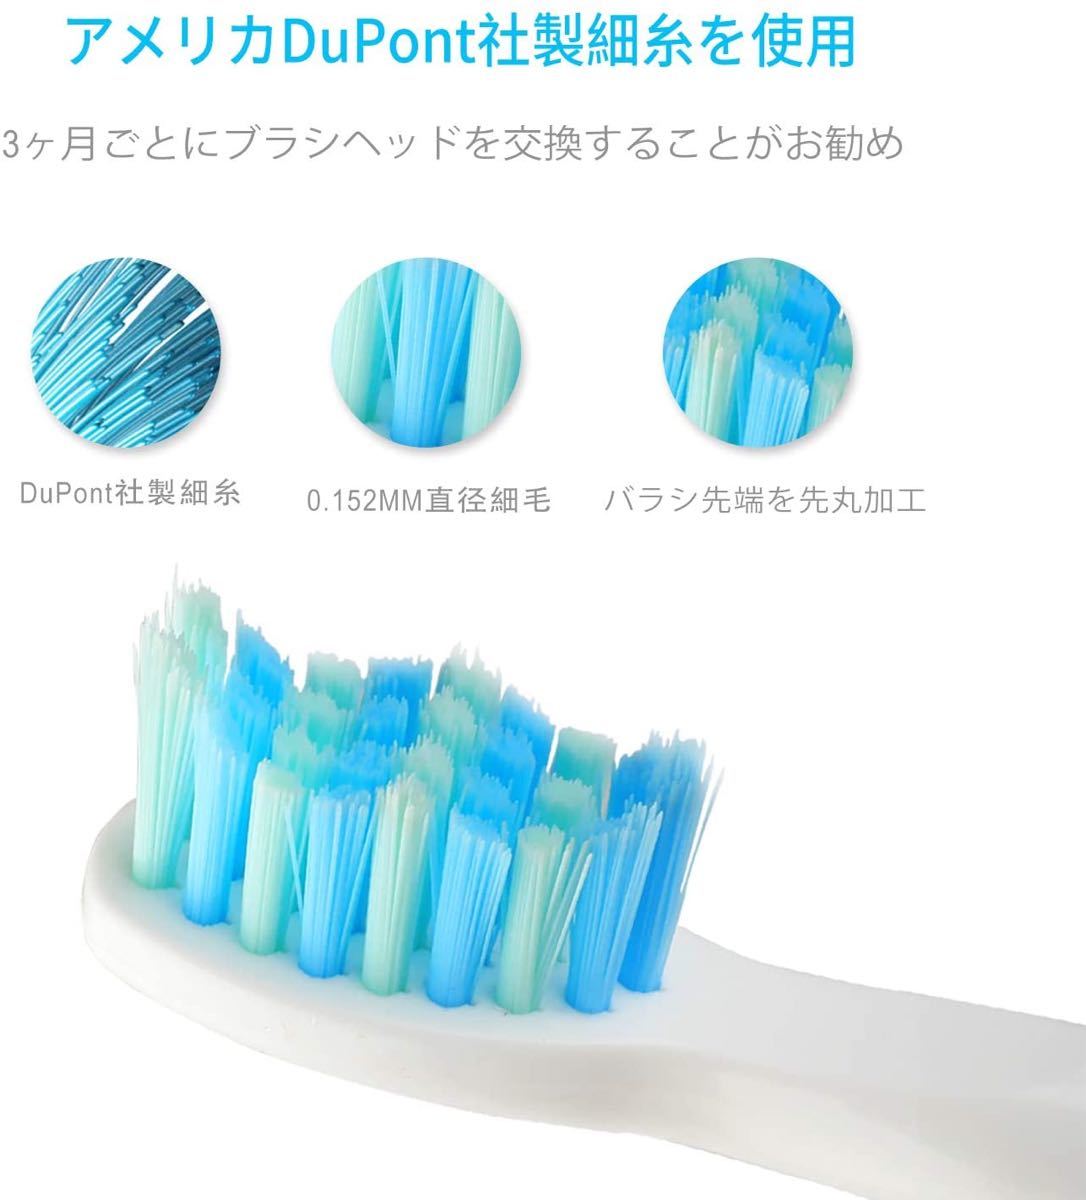 電動歯ブラシ 歯ブラシ  替えブラシ2本付き 防水